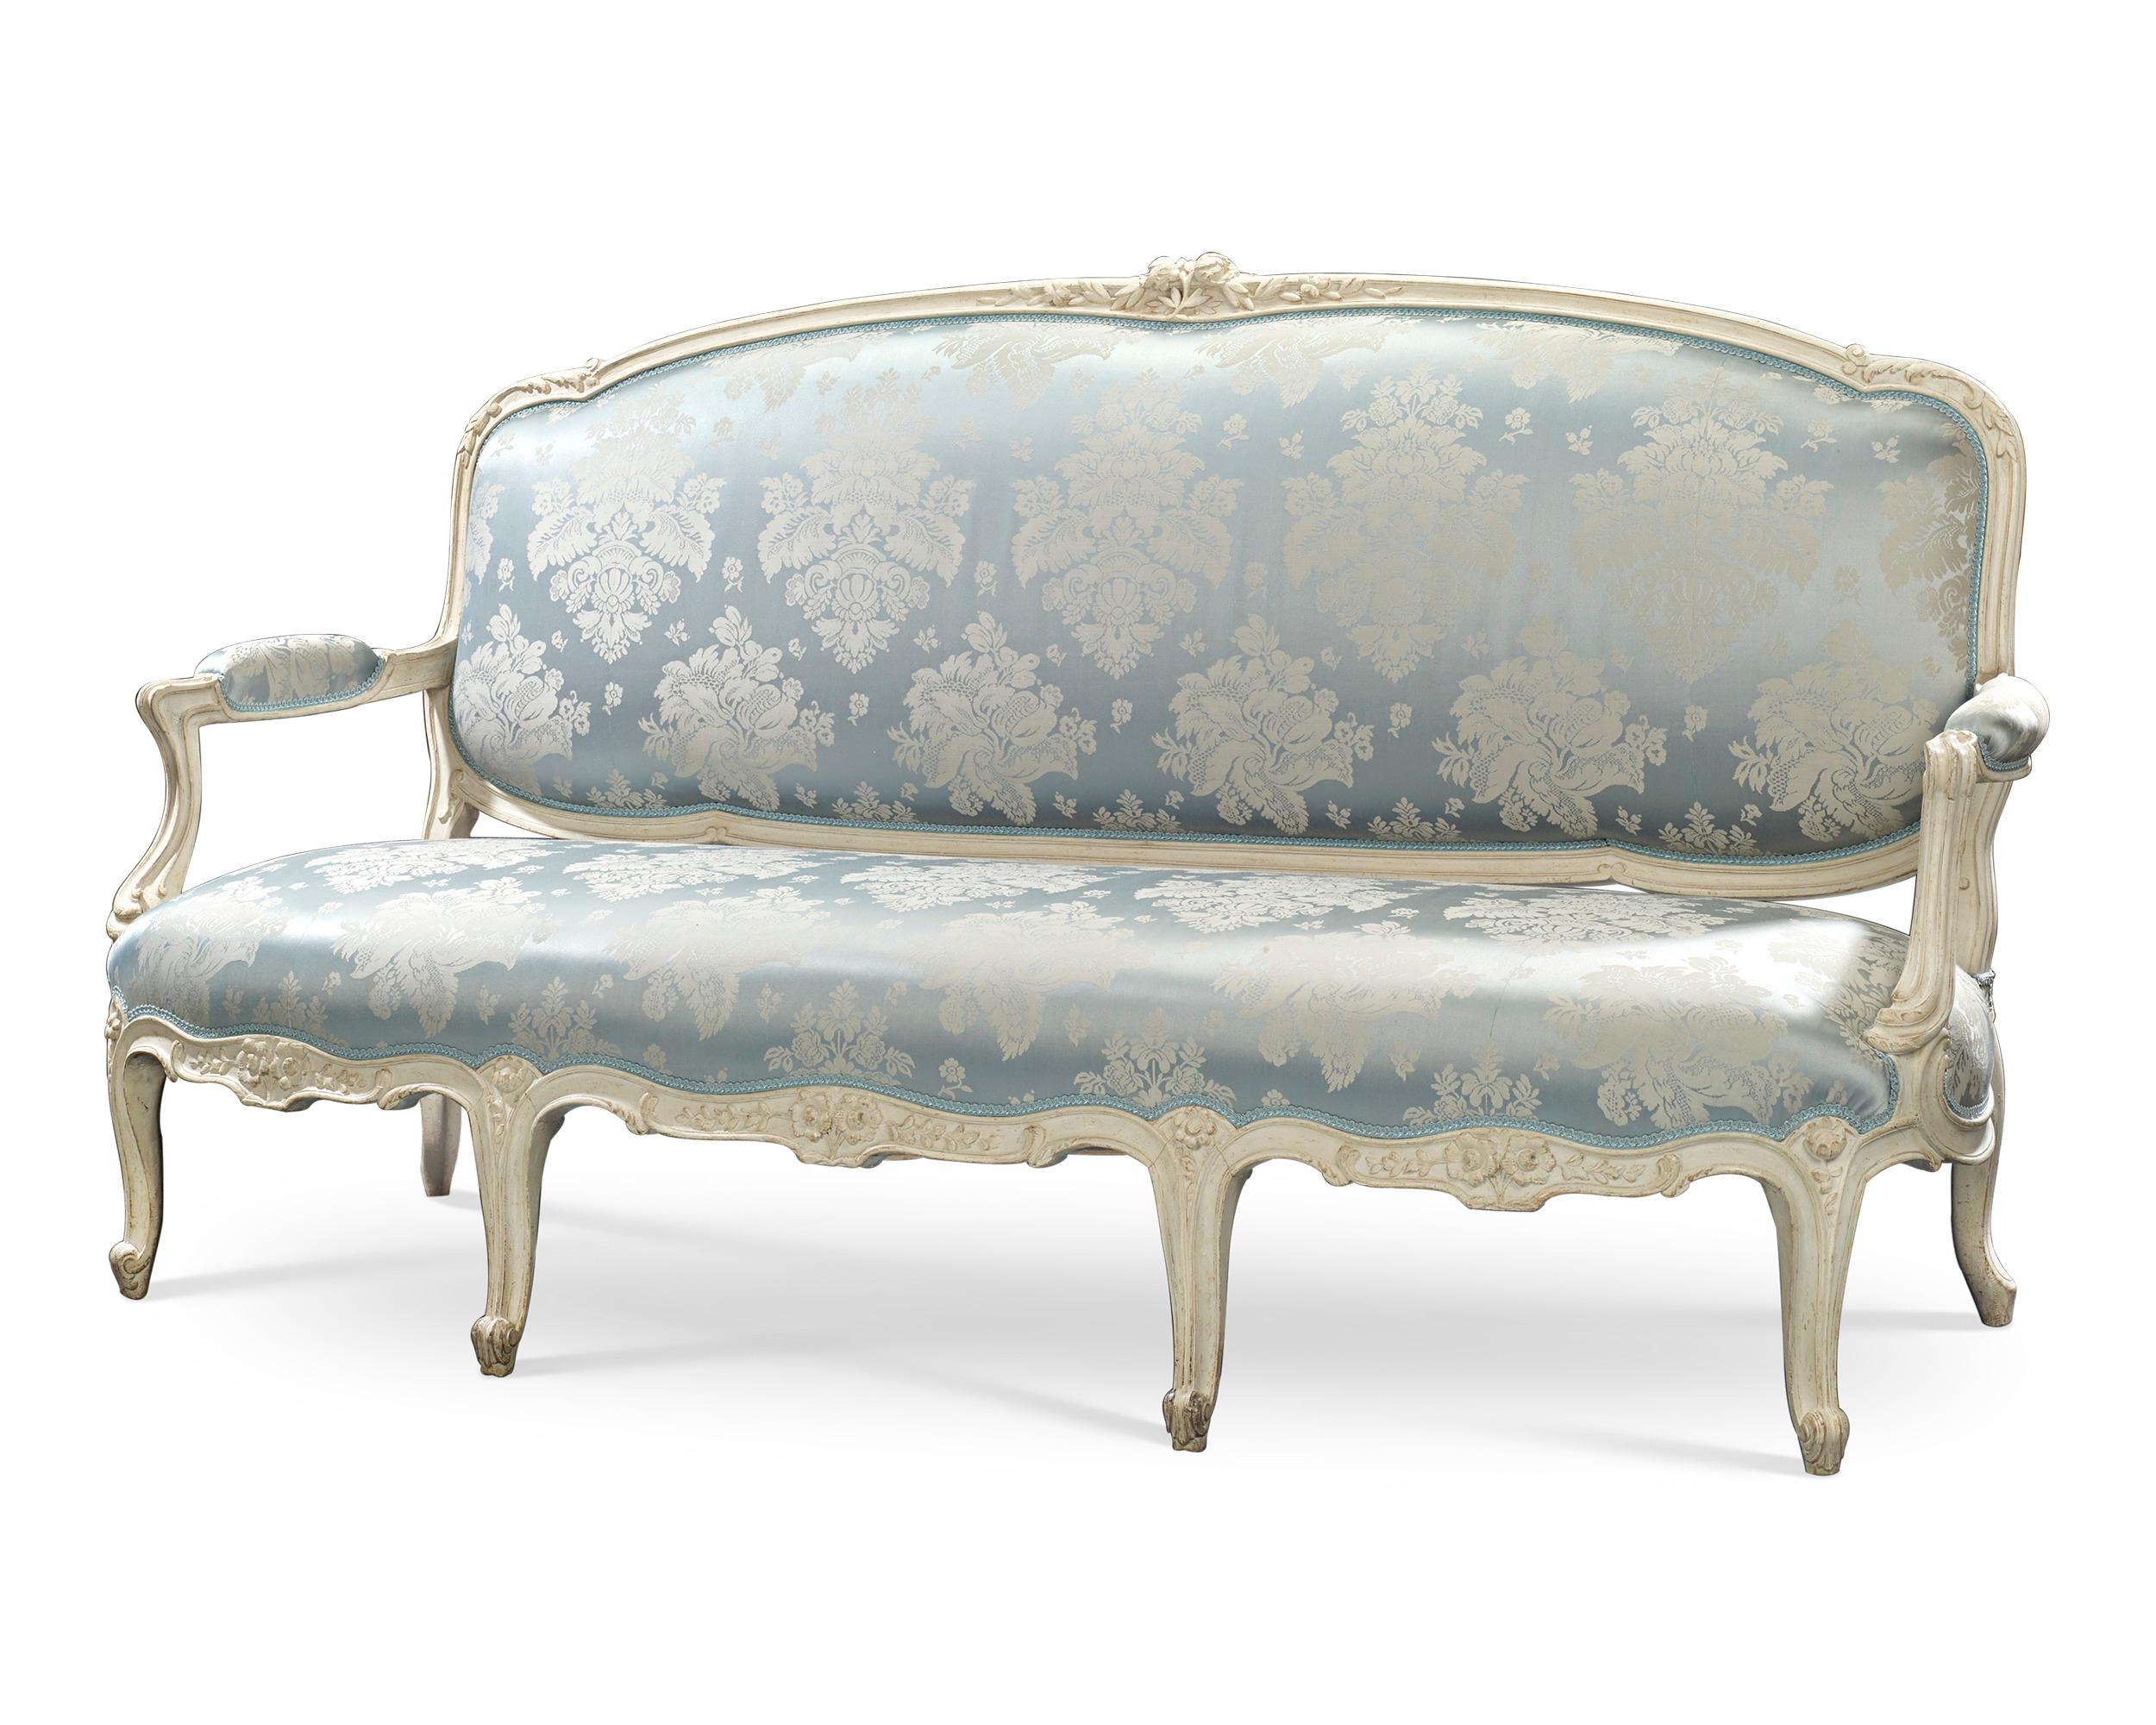 Die Pracht der Epoche Ludwigs XV. ist in diesem unglaublichen Sofa des berühmten Künstlers Jean-René Nadal l'Ainé (1733-1783) eingefangen. Das seltene Sofa, das mit einem blau-weißen Stoff bezogen ist, der das Weiß des Holzes ergänzt, spiegelt den